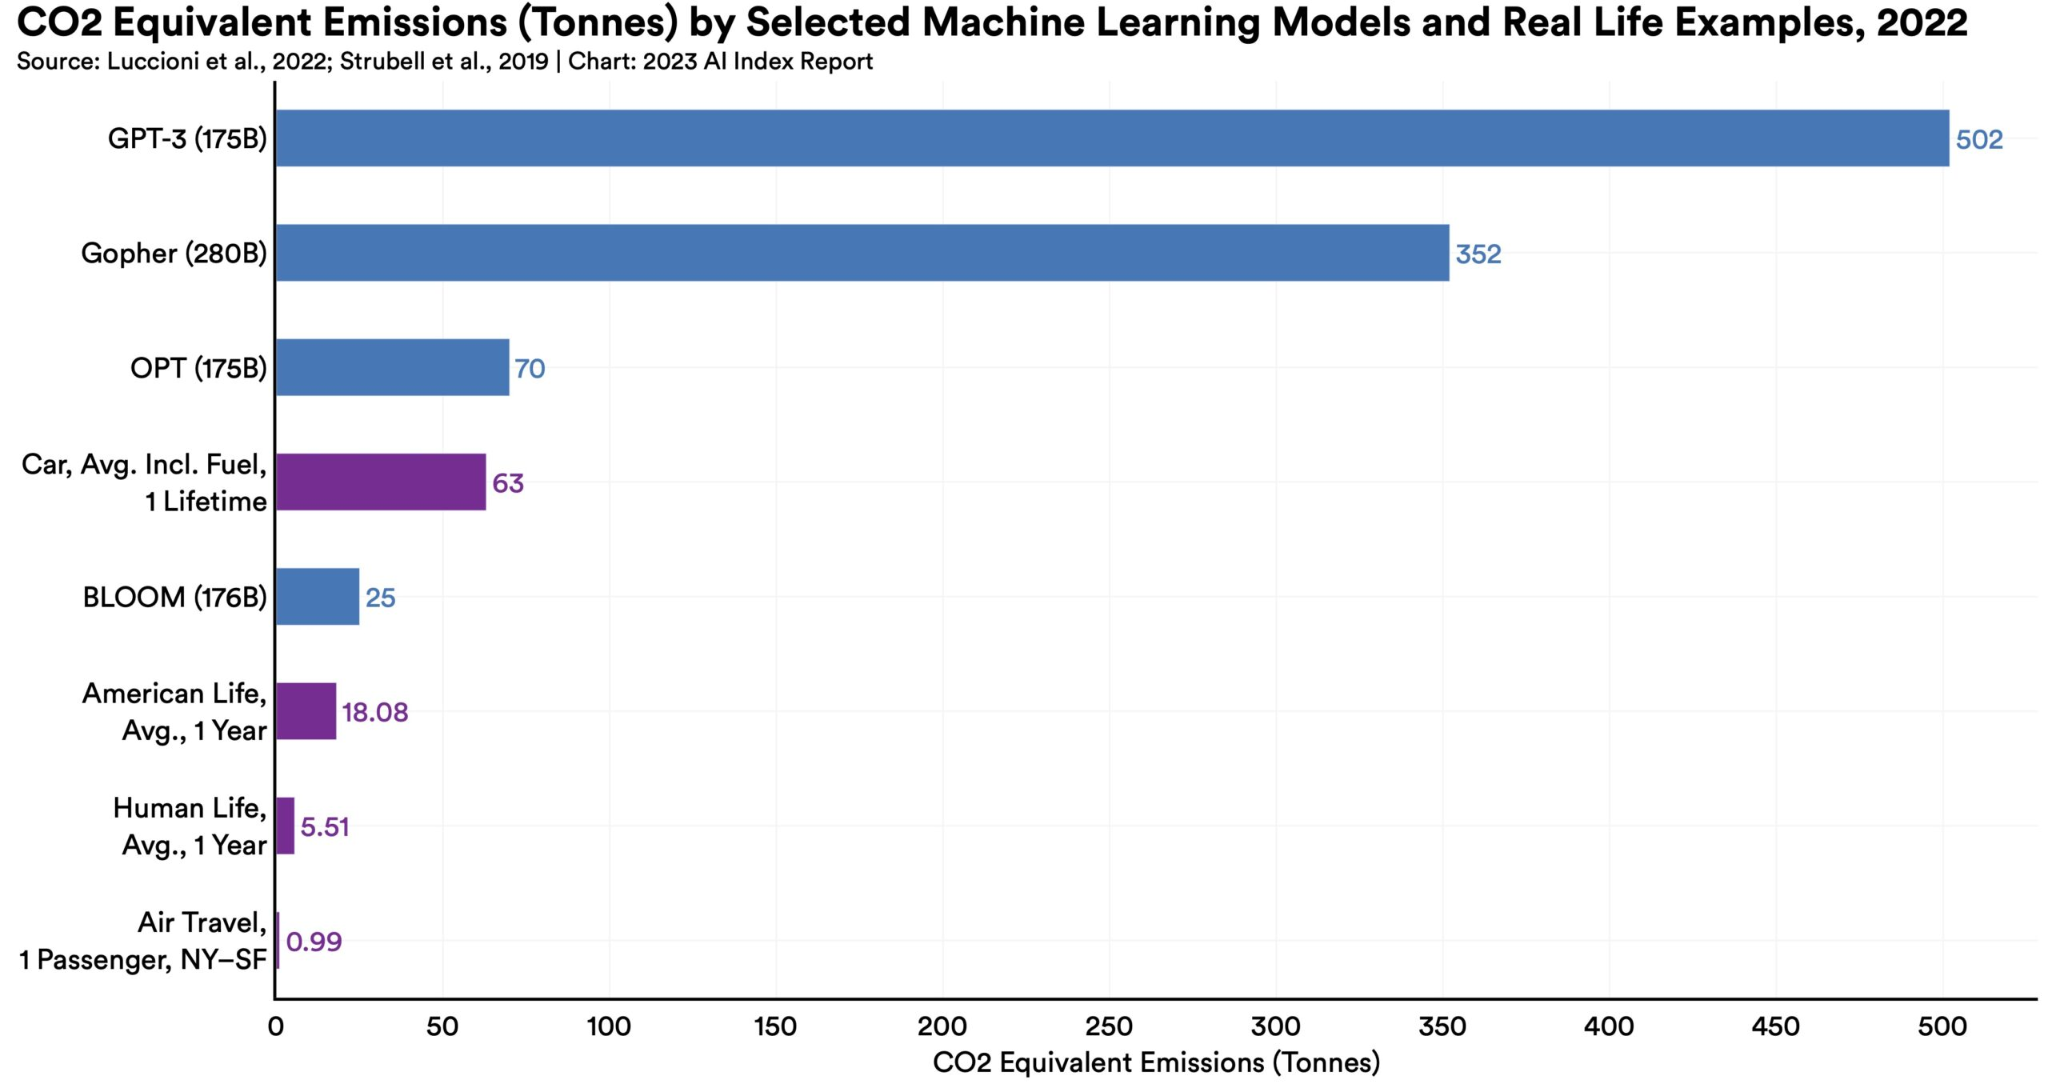 図）各機械学習モデルのCO₂換算推定排出量（トン）、2022年